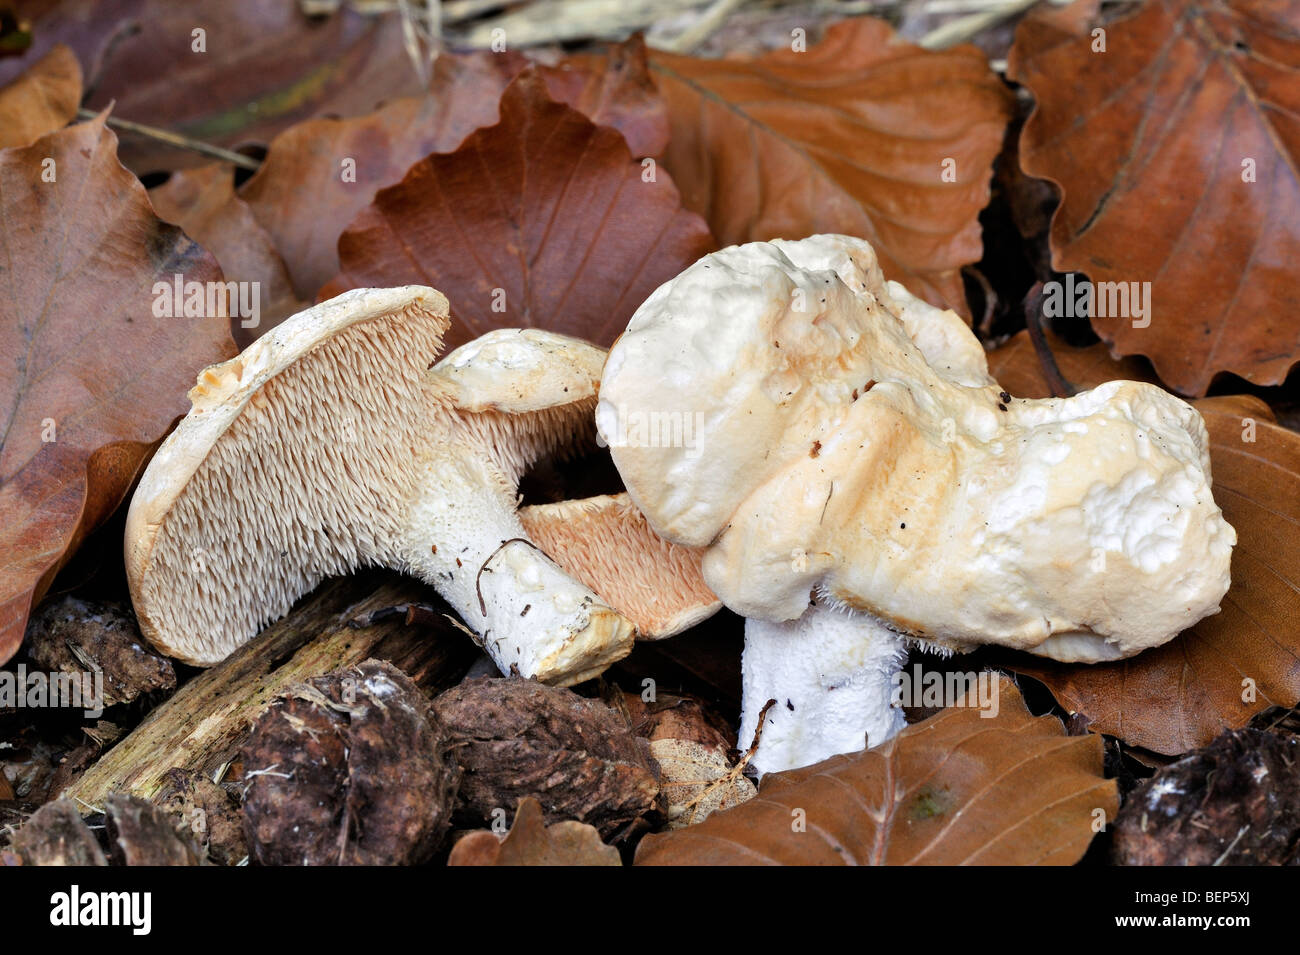 Sweet tooth / wood hedgehog / hedgehog mushroom (Hydnum repandum) showing underside with spines Stock Photo